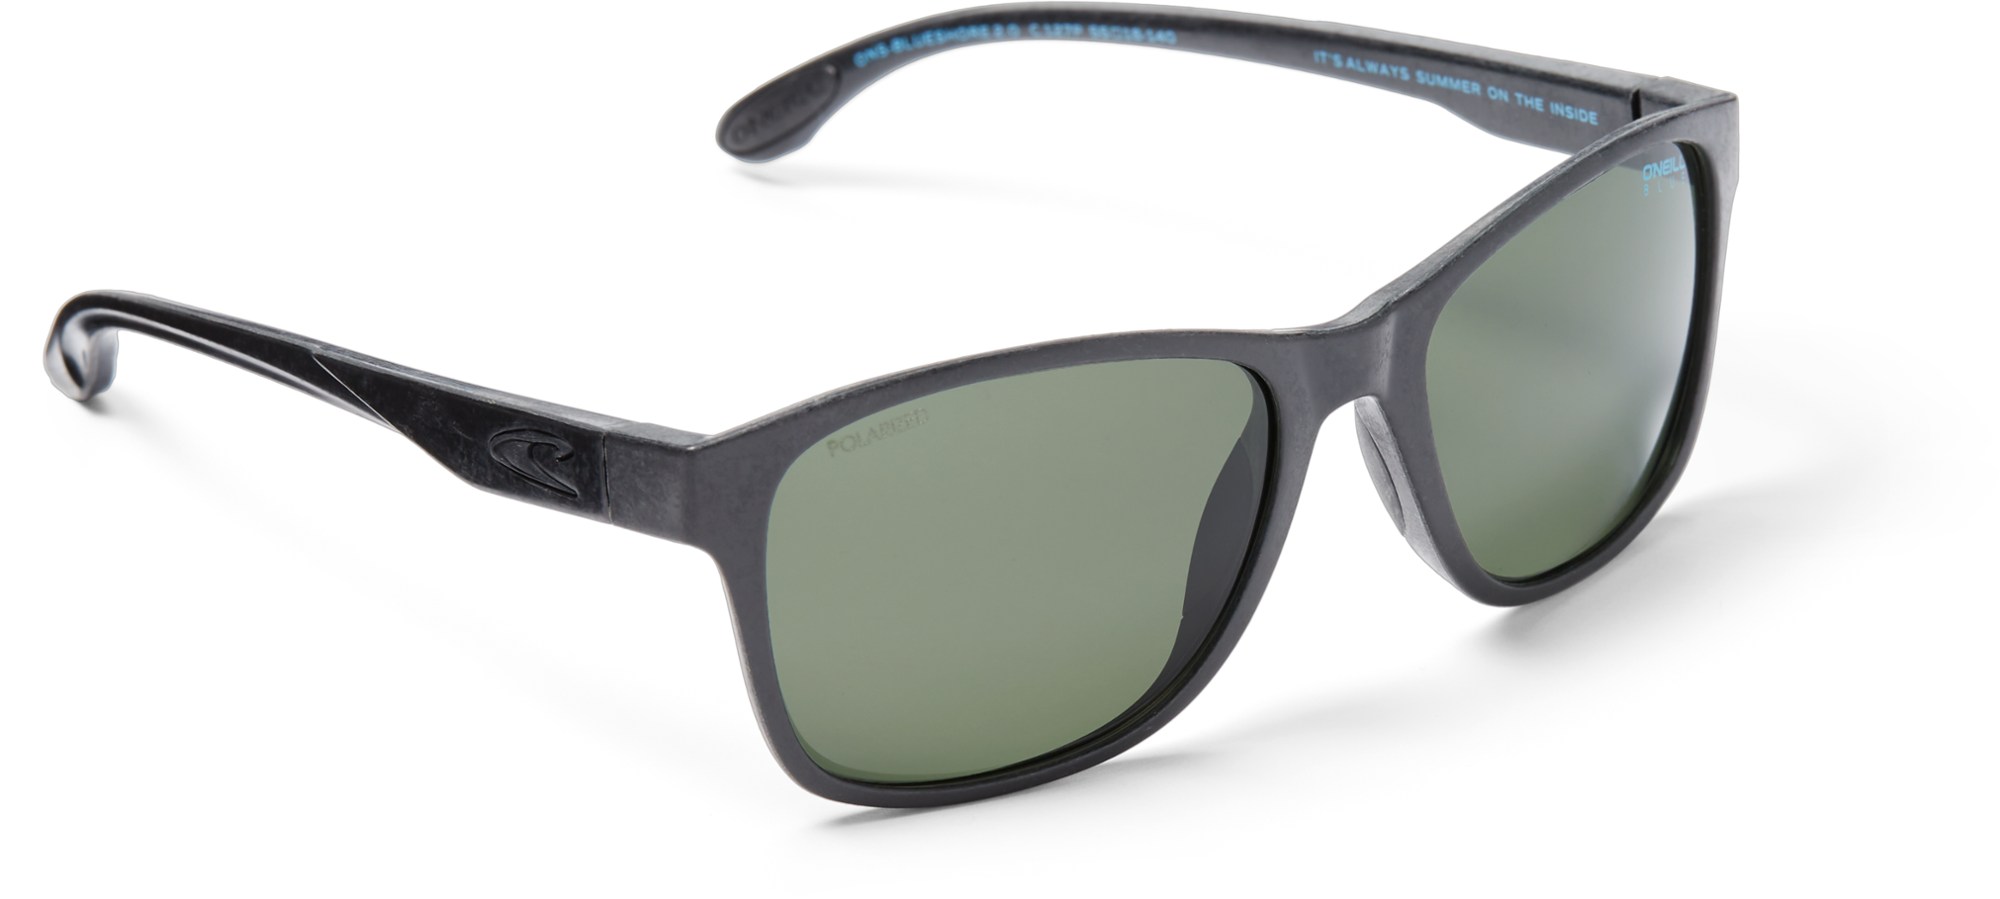 цена Поляризованные солнцезащитные очки Blueshore O'NEILL Sunglasses, черный